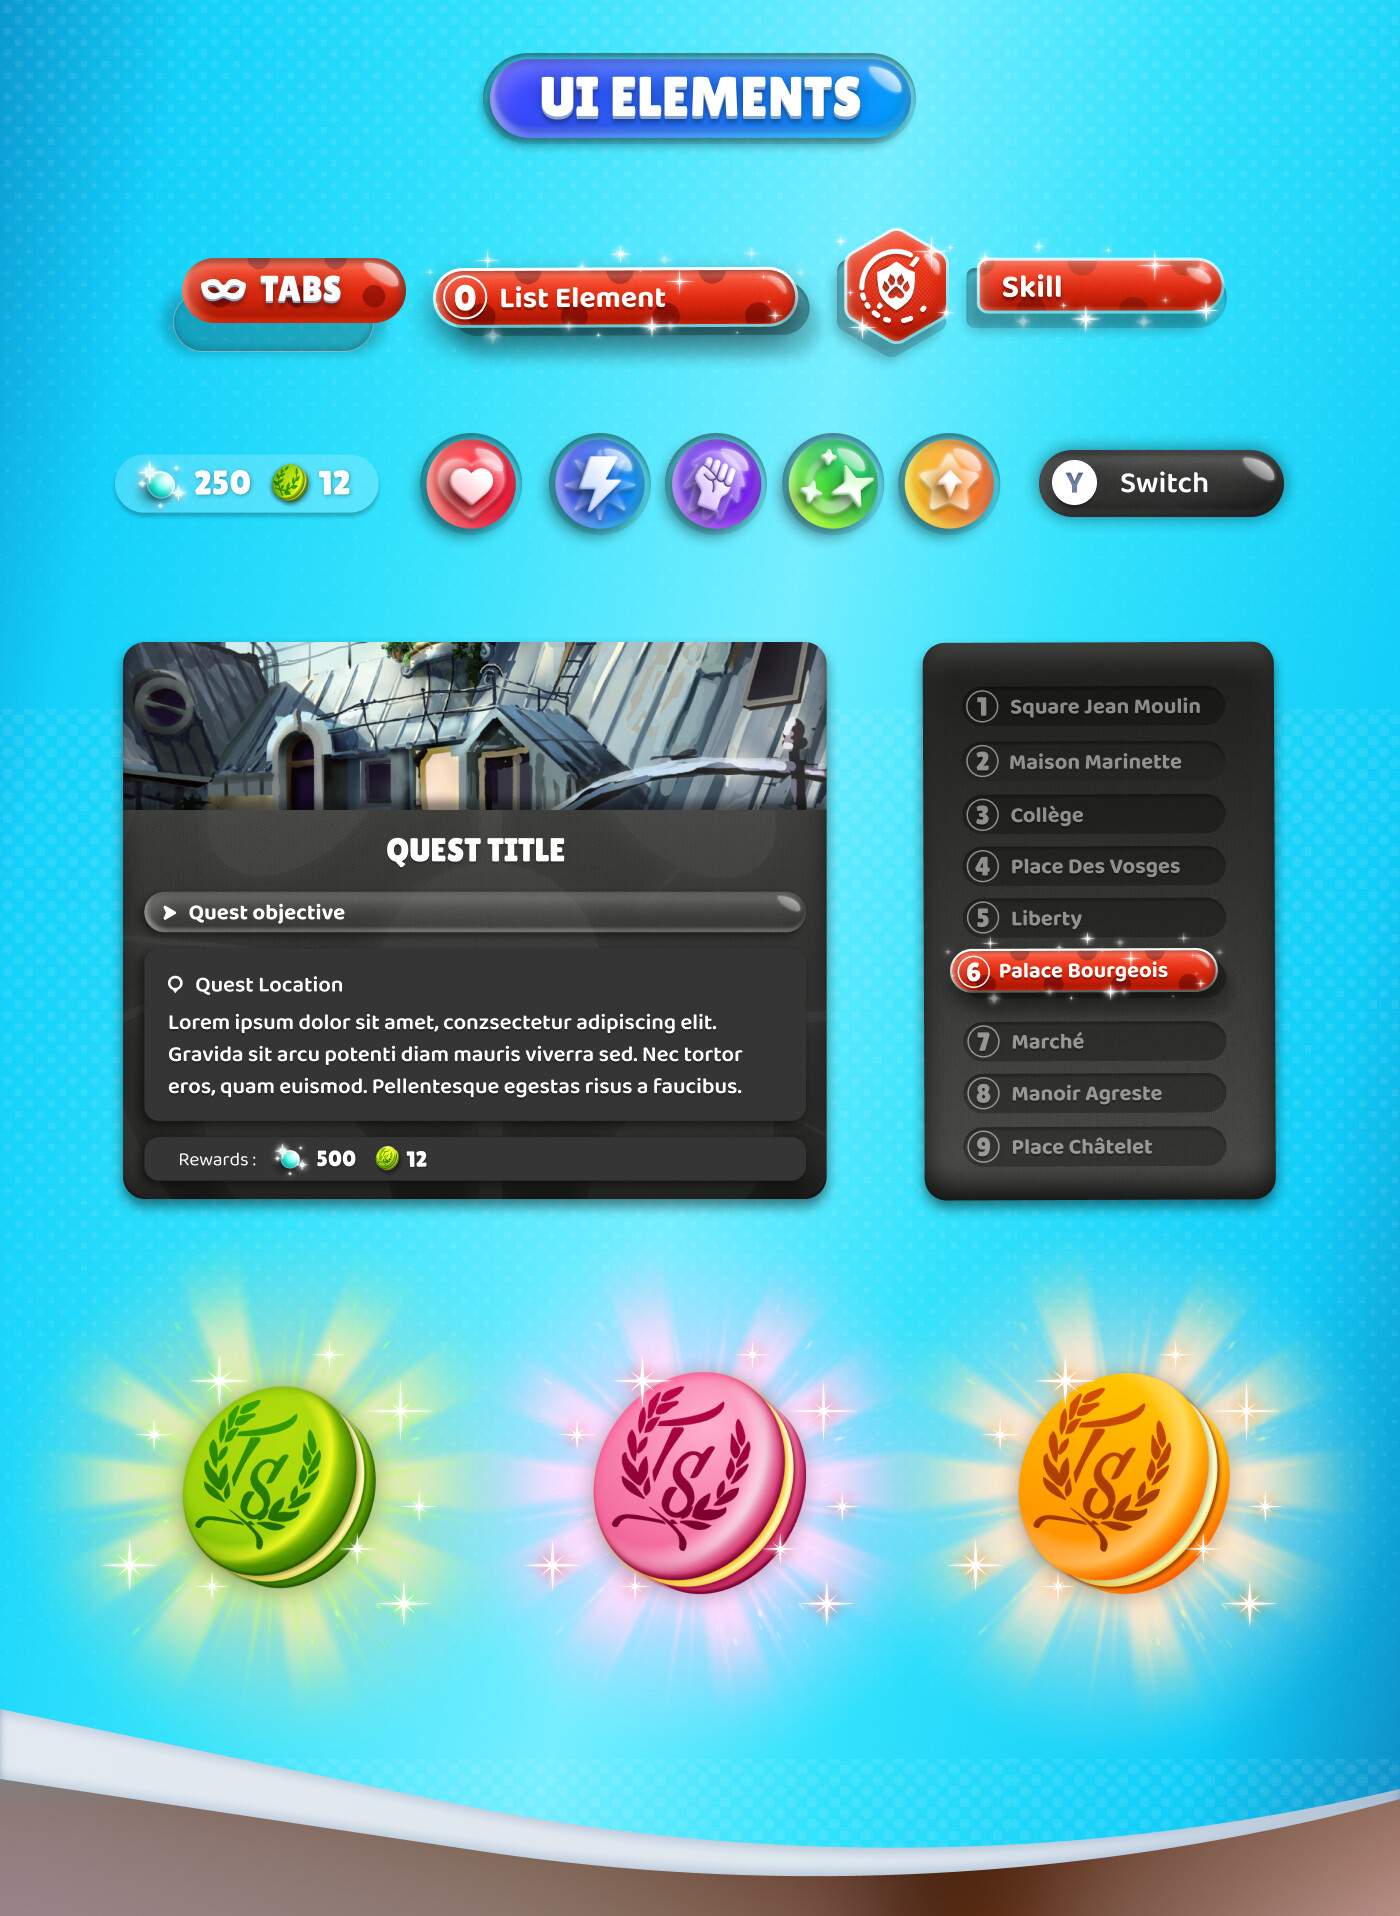 ArtStation - Miraculous Ladybug Mobile Game - UI Elements